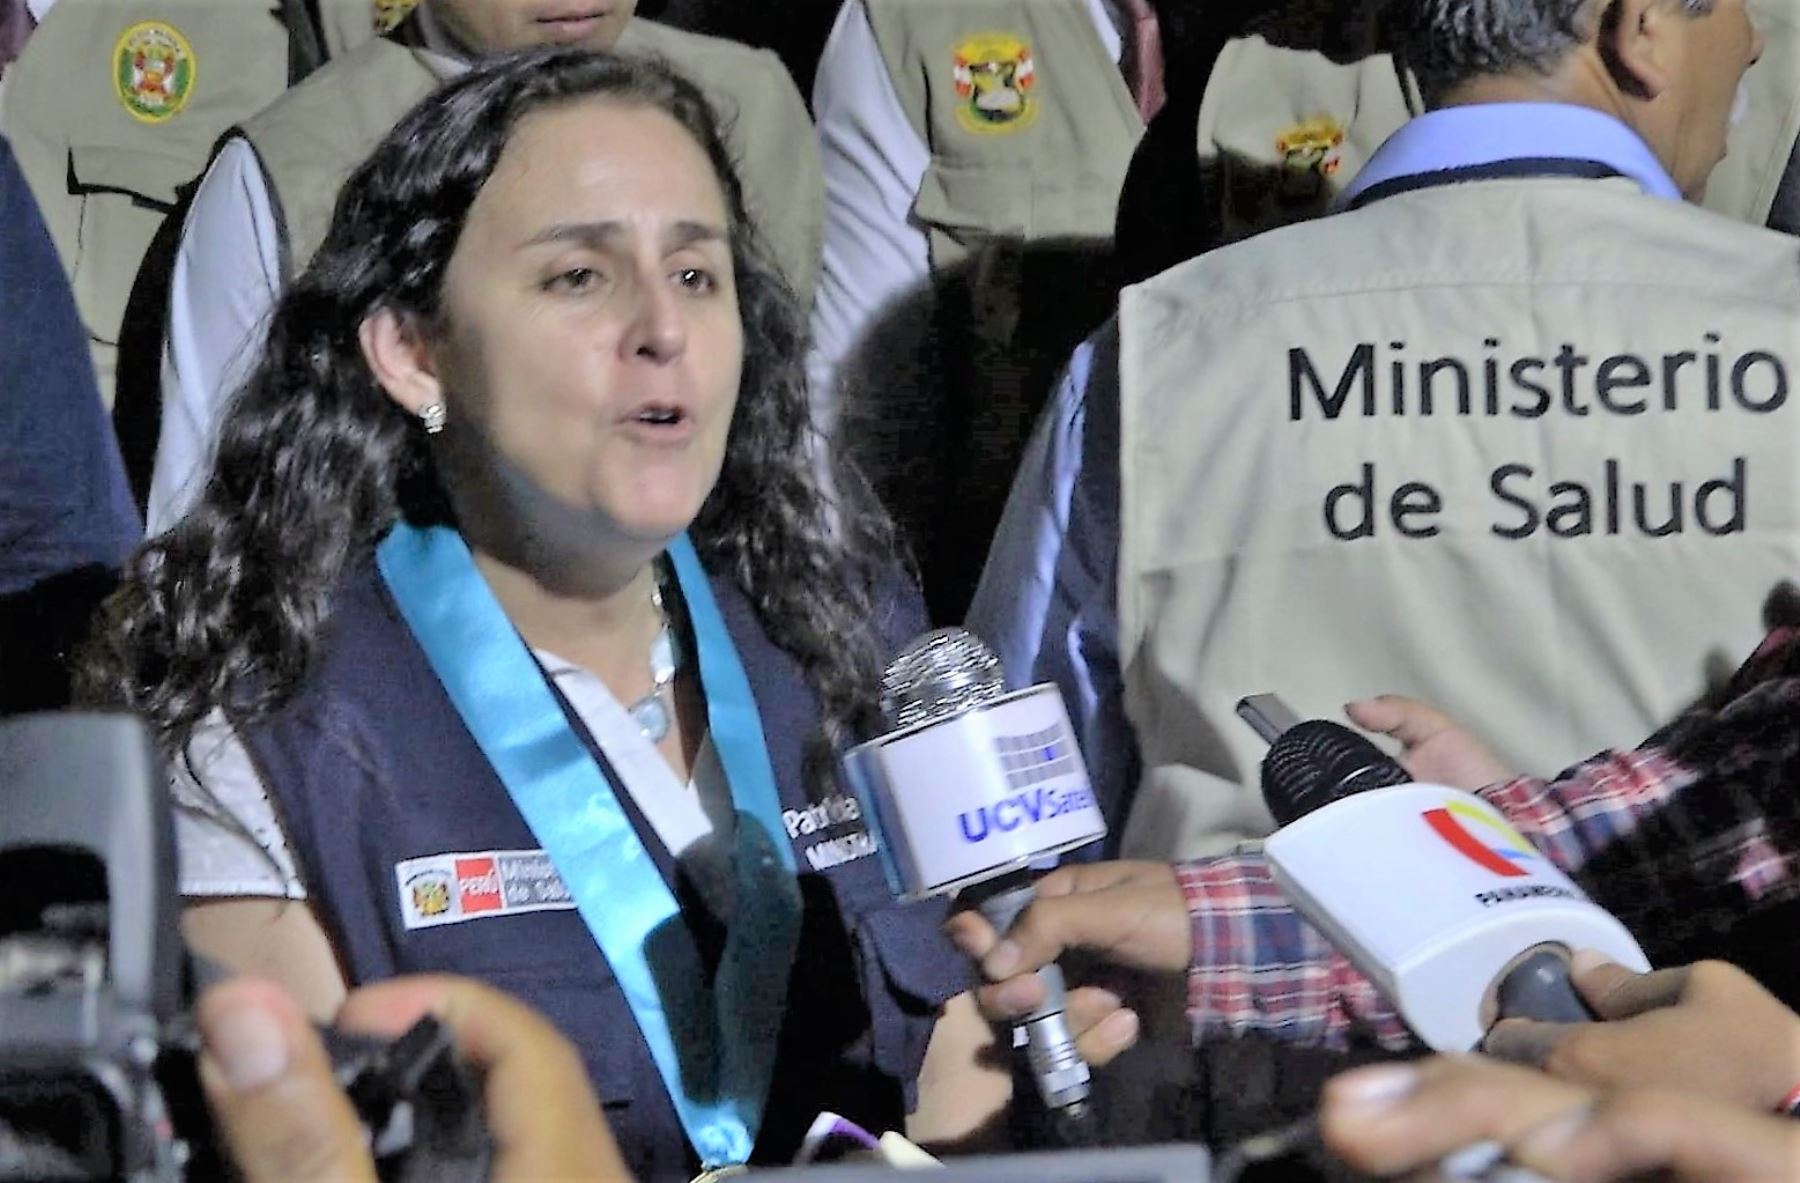 Minsa apoyará en la reconstrucción del Hospital La Caleta de Chimbote, anunció ministra Patricia García. ANDINA